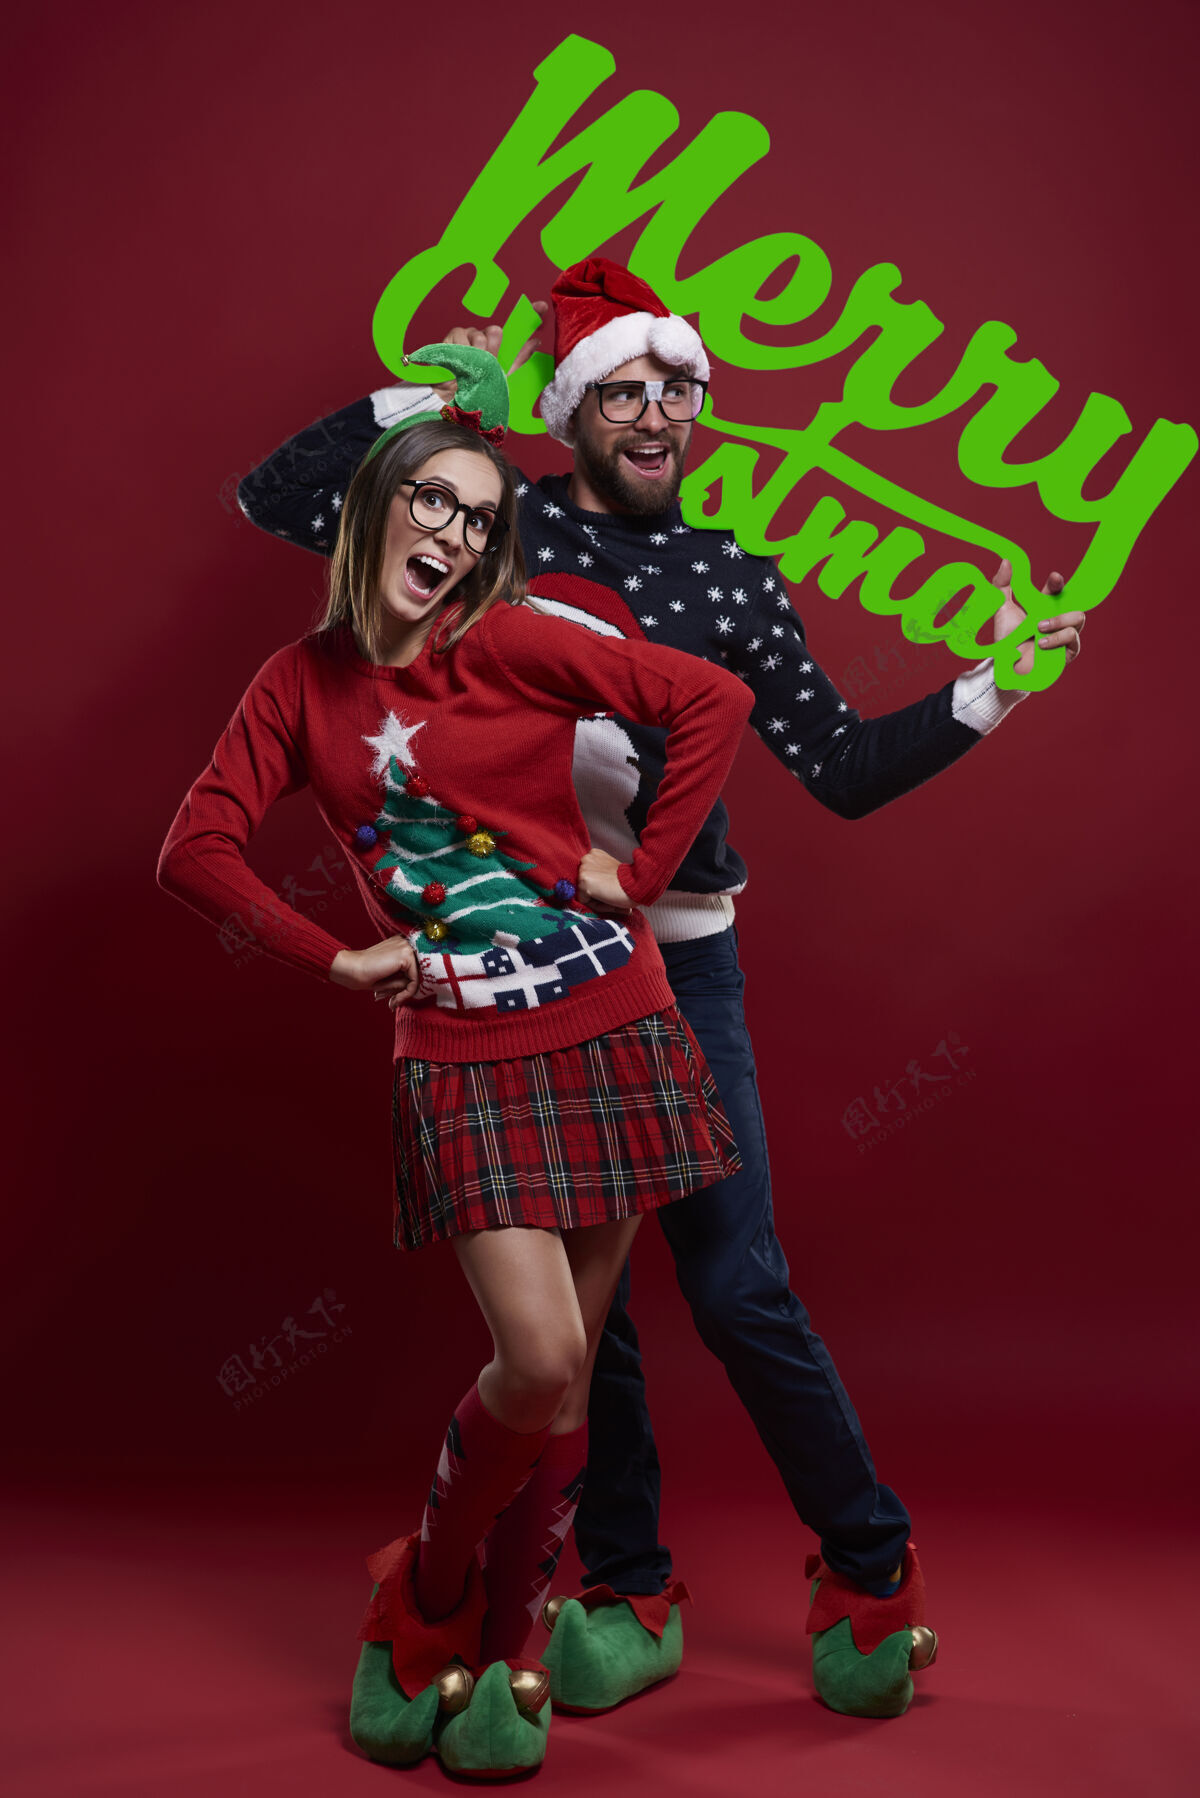 眼镜穿着圣诞服装的快乐的书呆子夫妇精灵愿望情侣